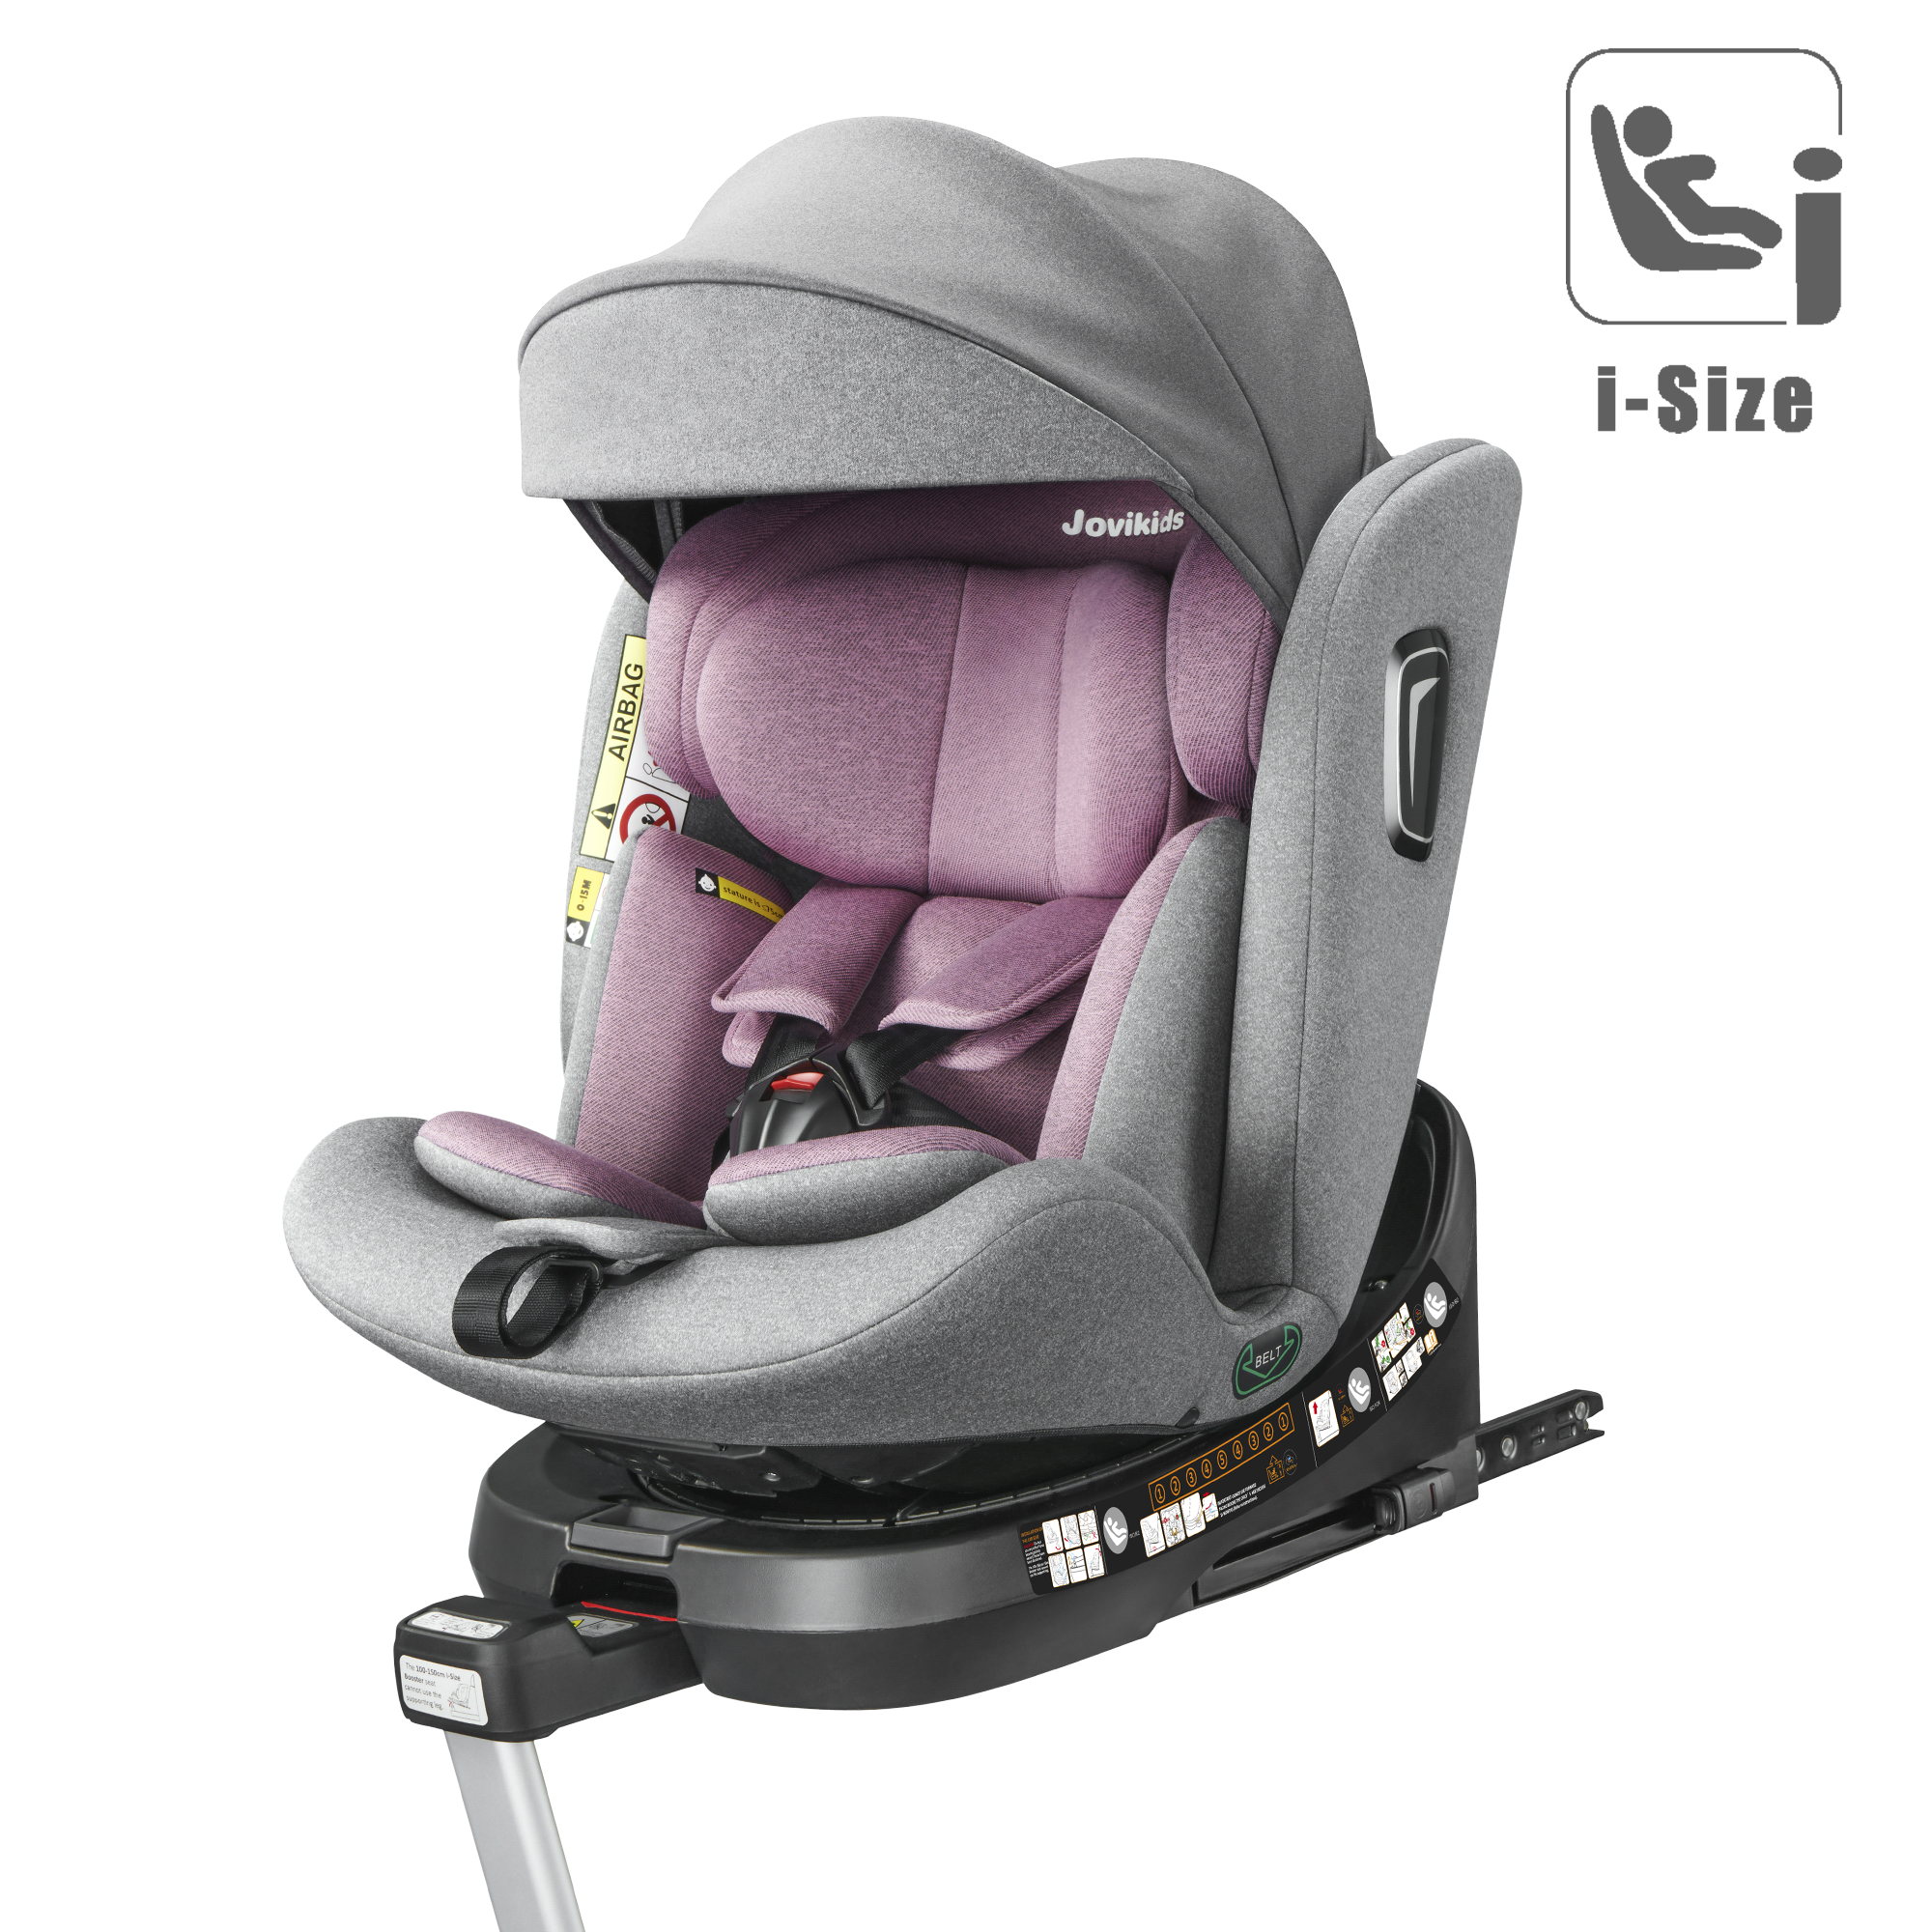 Baby Car Seat Black 360 Swivel Isofix I-Size 40-150cm Group 0+1/2/3